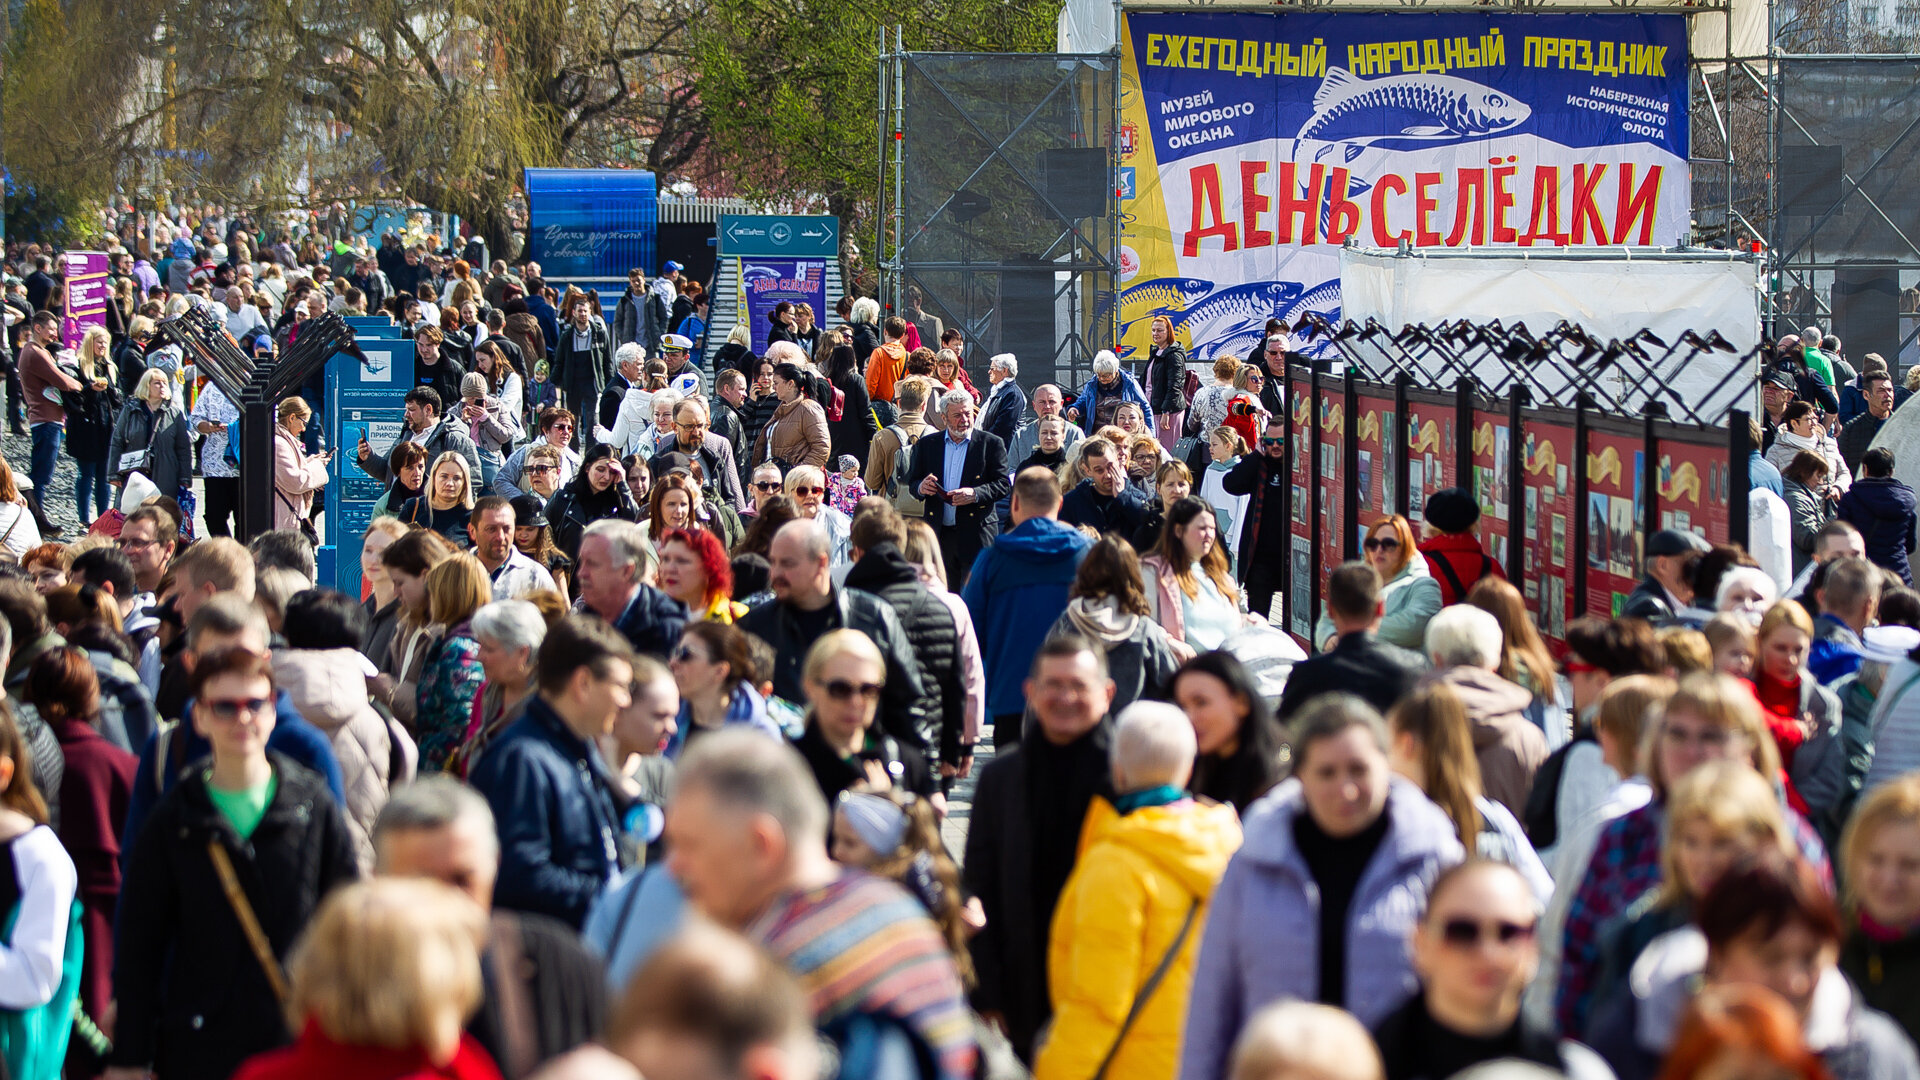 Калининградский День селедки вошел в календарь туристических событий РФ